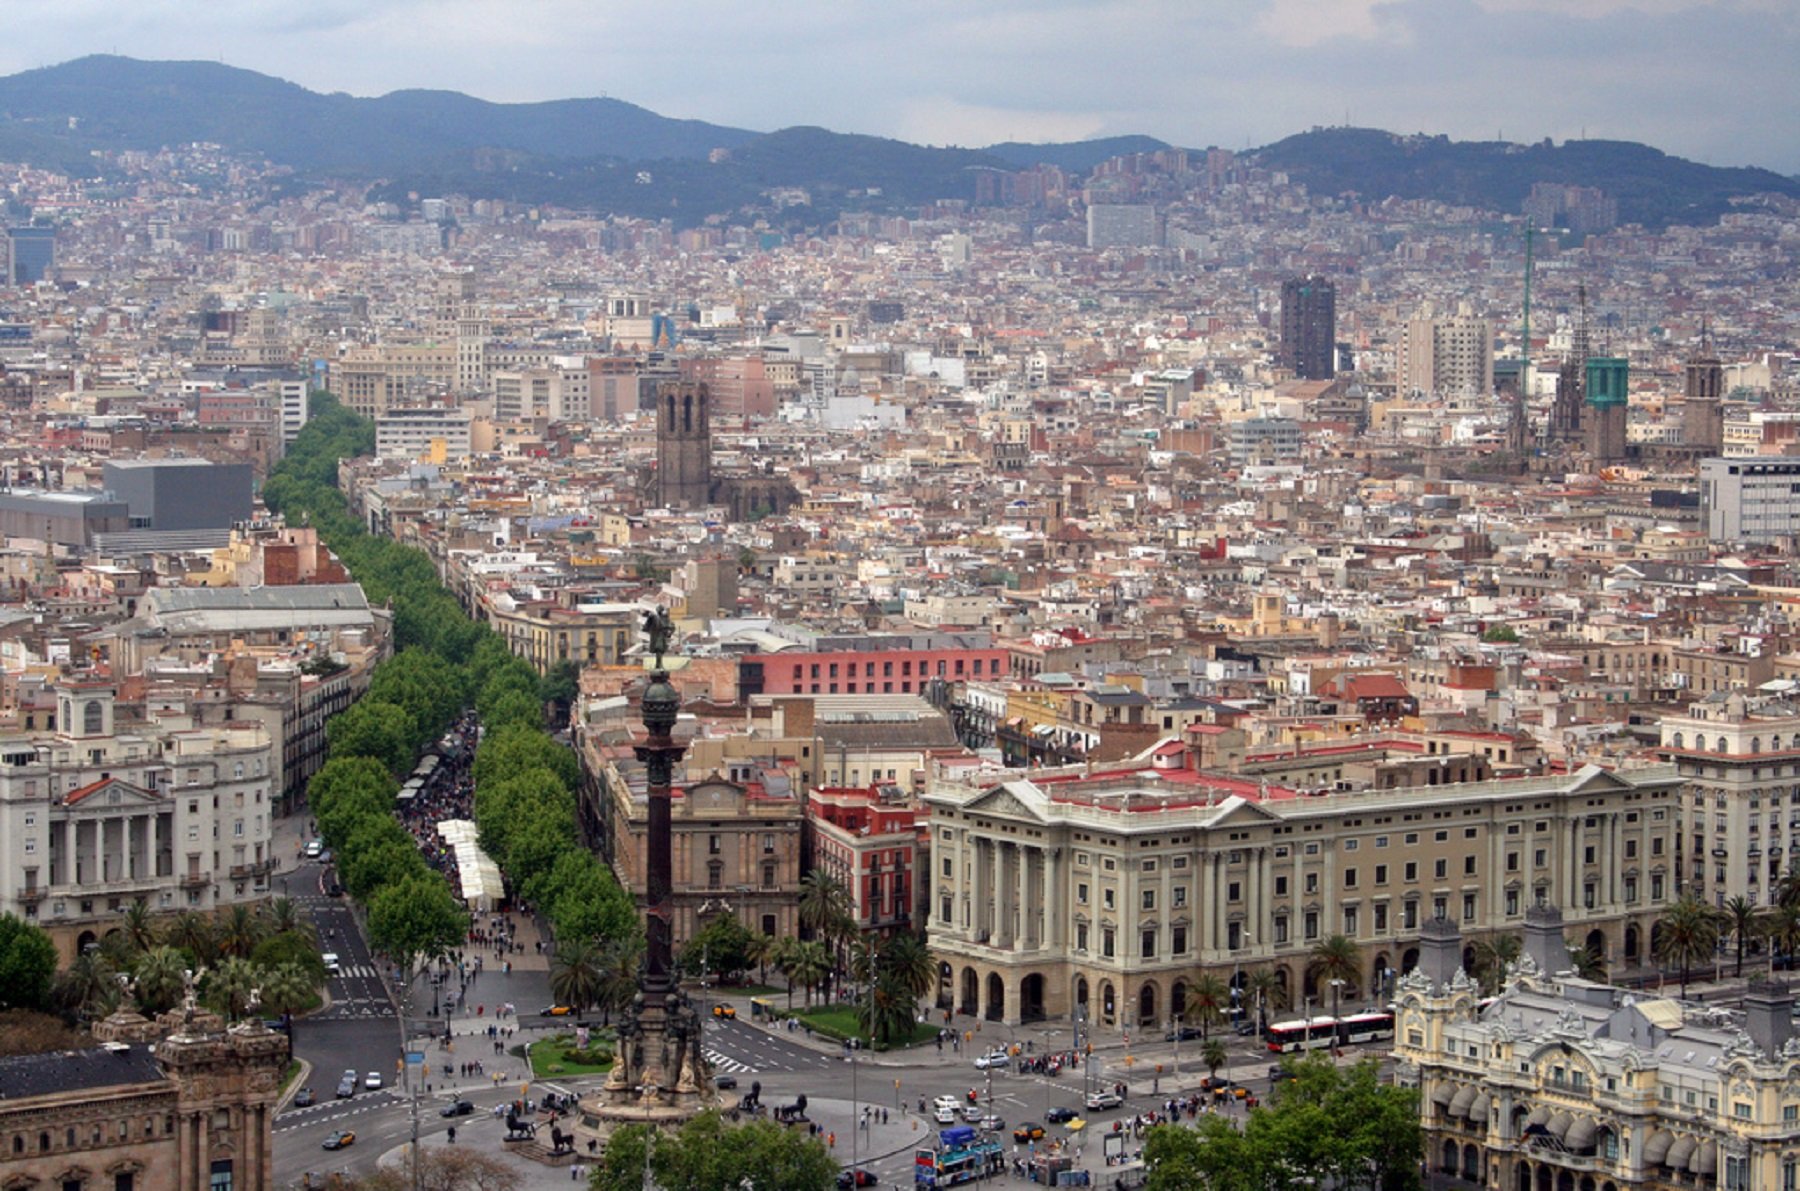 El 'Financial Times' premia Catalunya i Barcelona per captar inversió estrangera